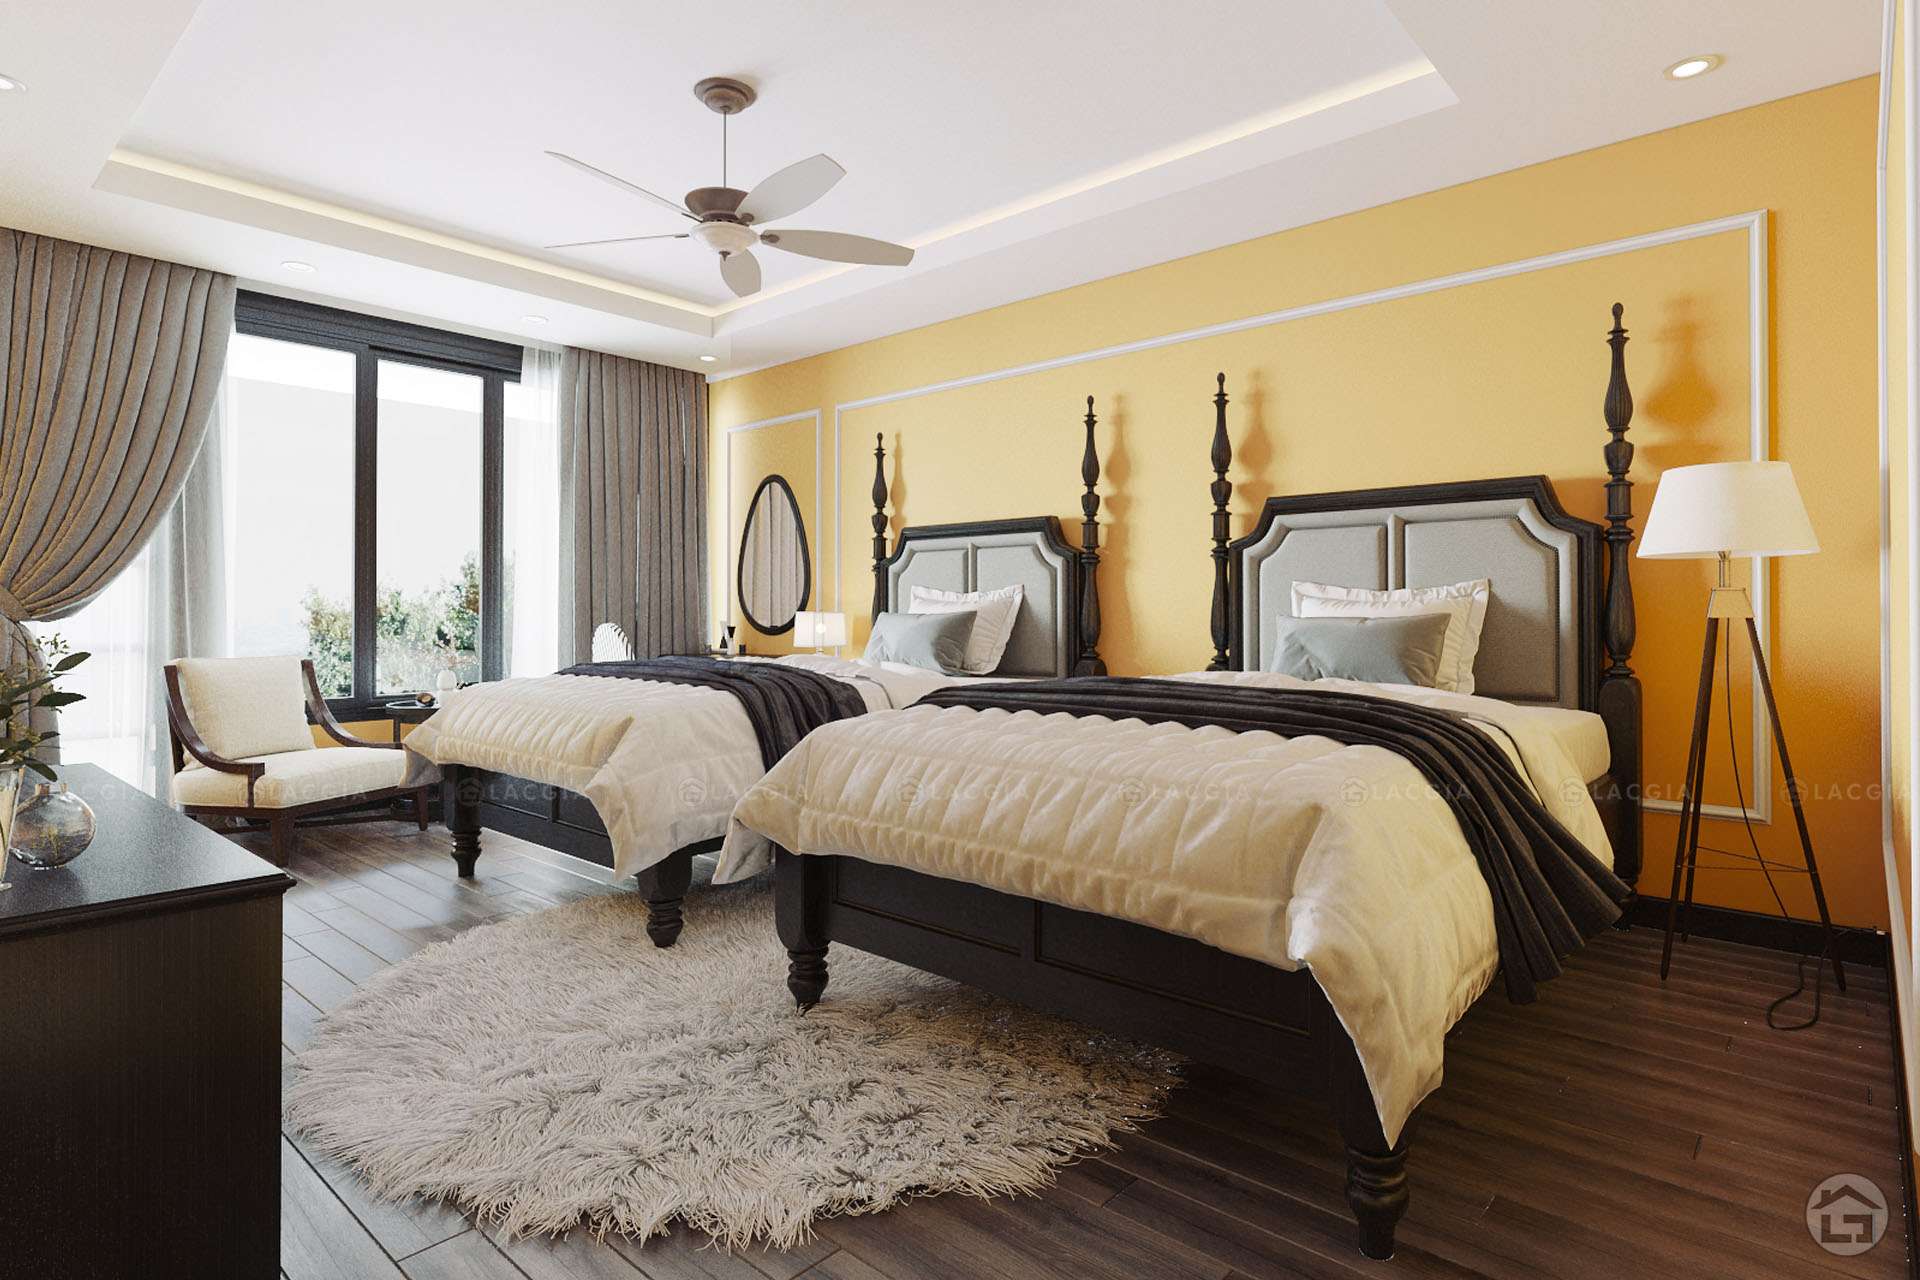 50 mô hình phòng ngủ đơn giản và đẹp mắt nhất